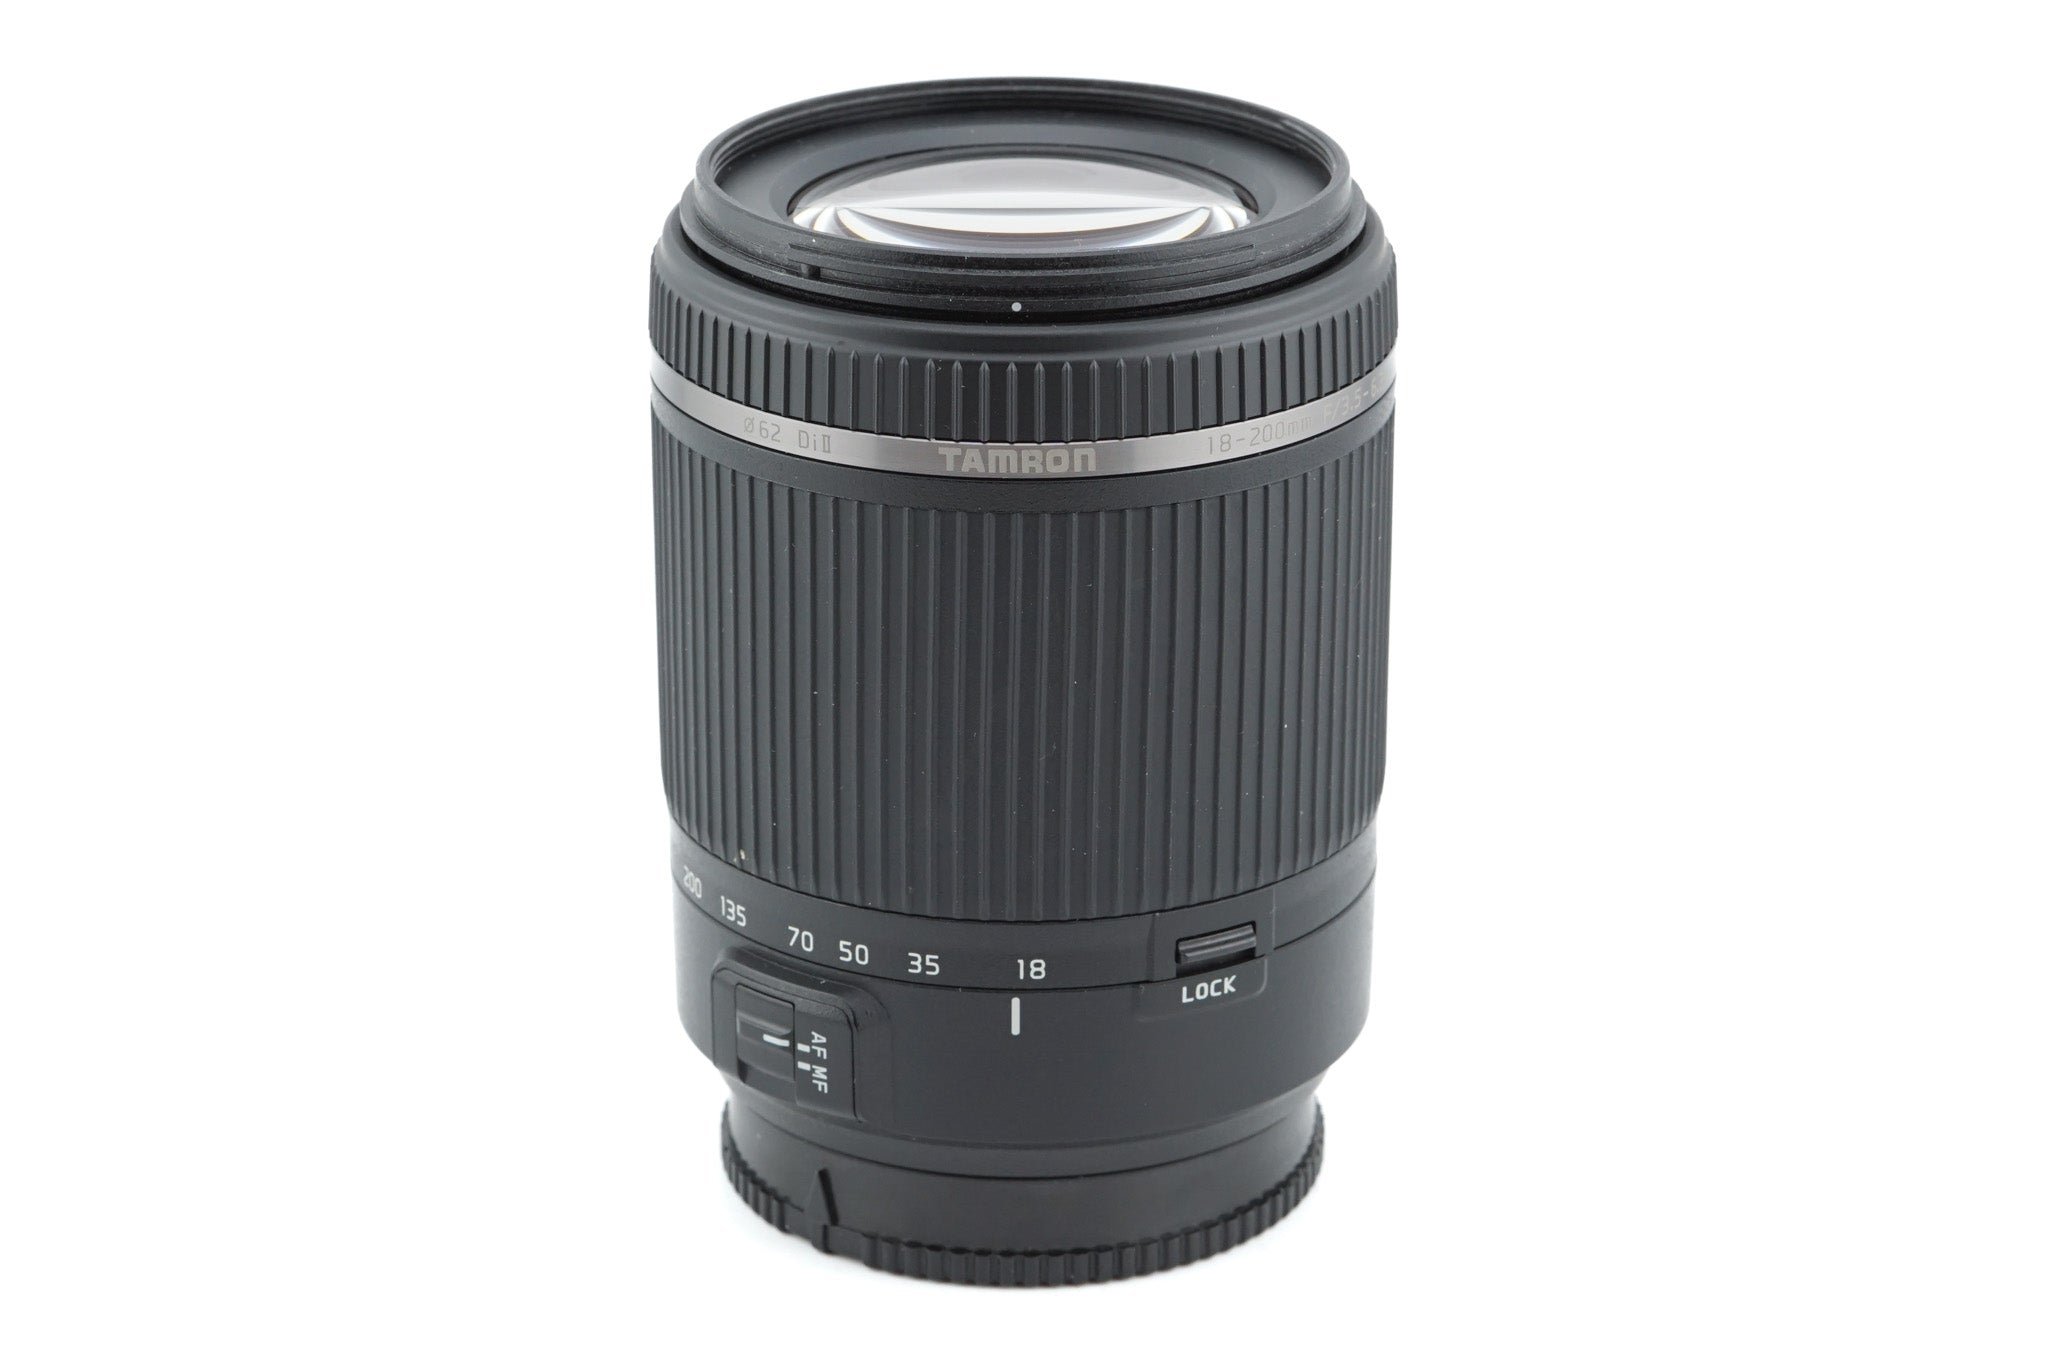 Tamron 18-200mm f3.5-6.3 Di II (B018) - Lens